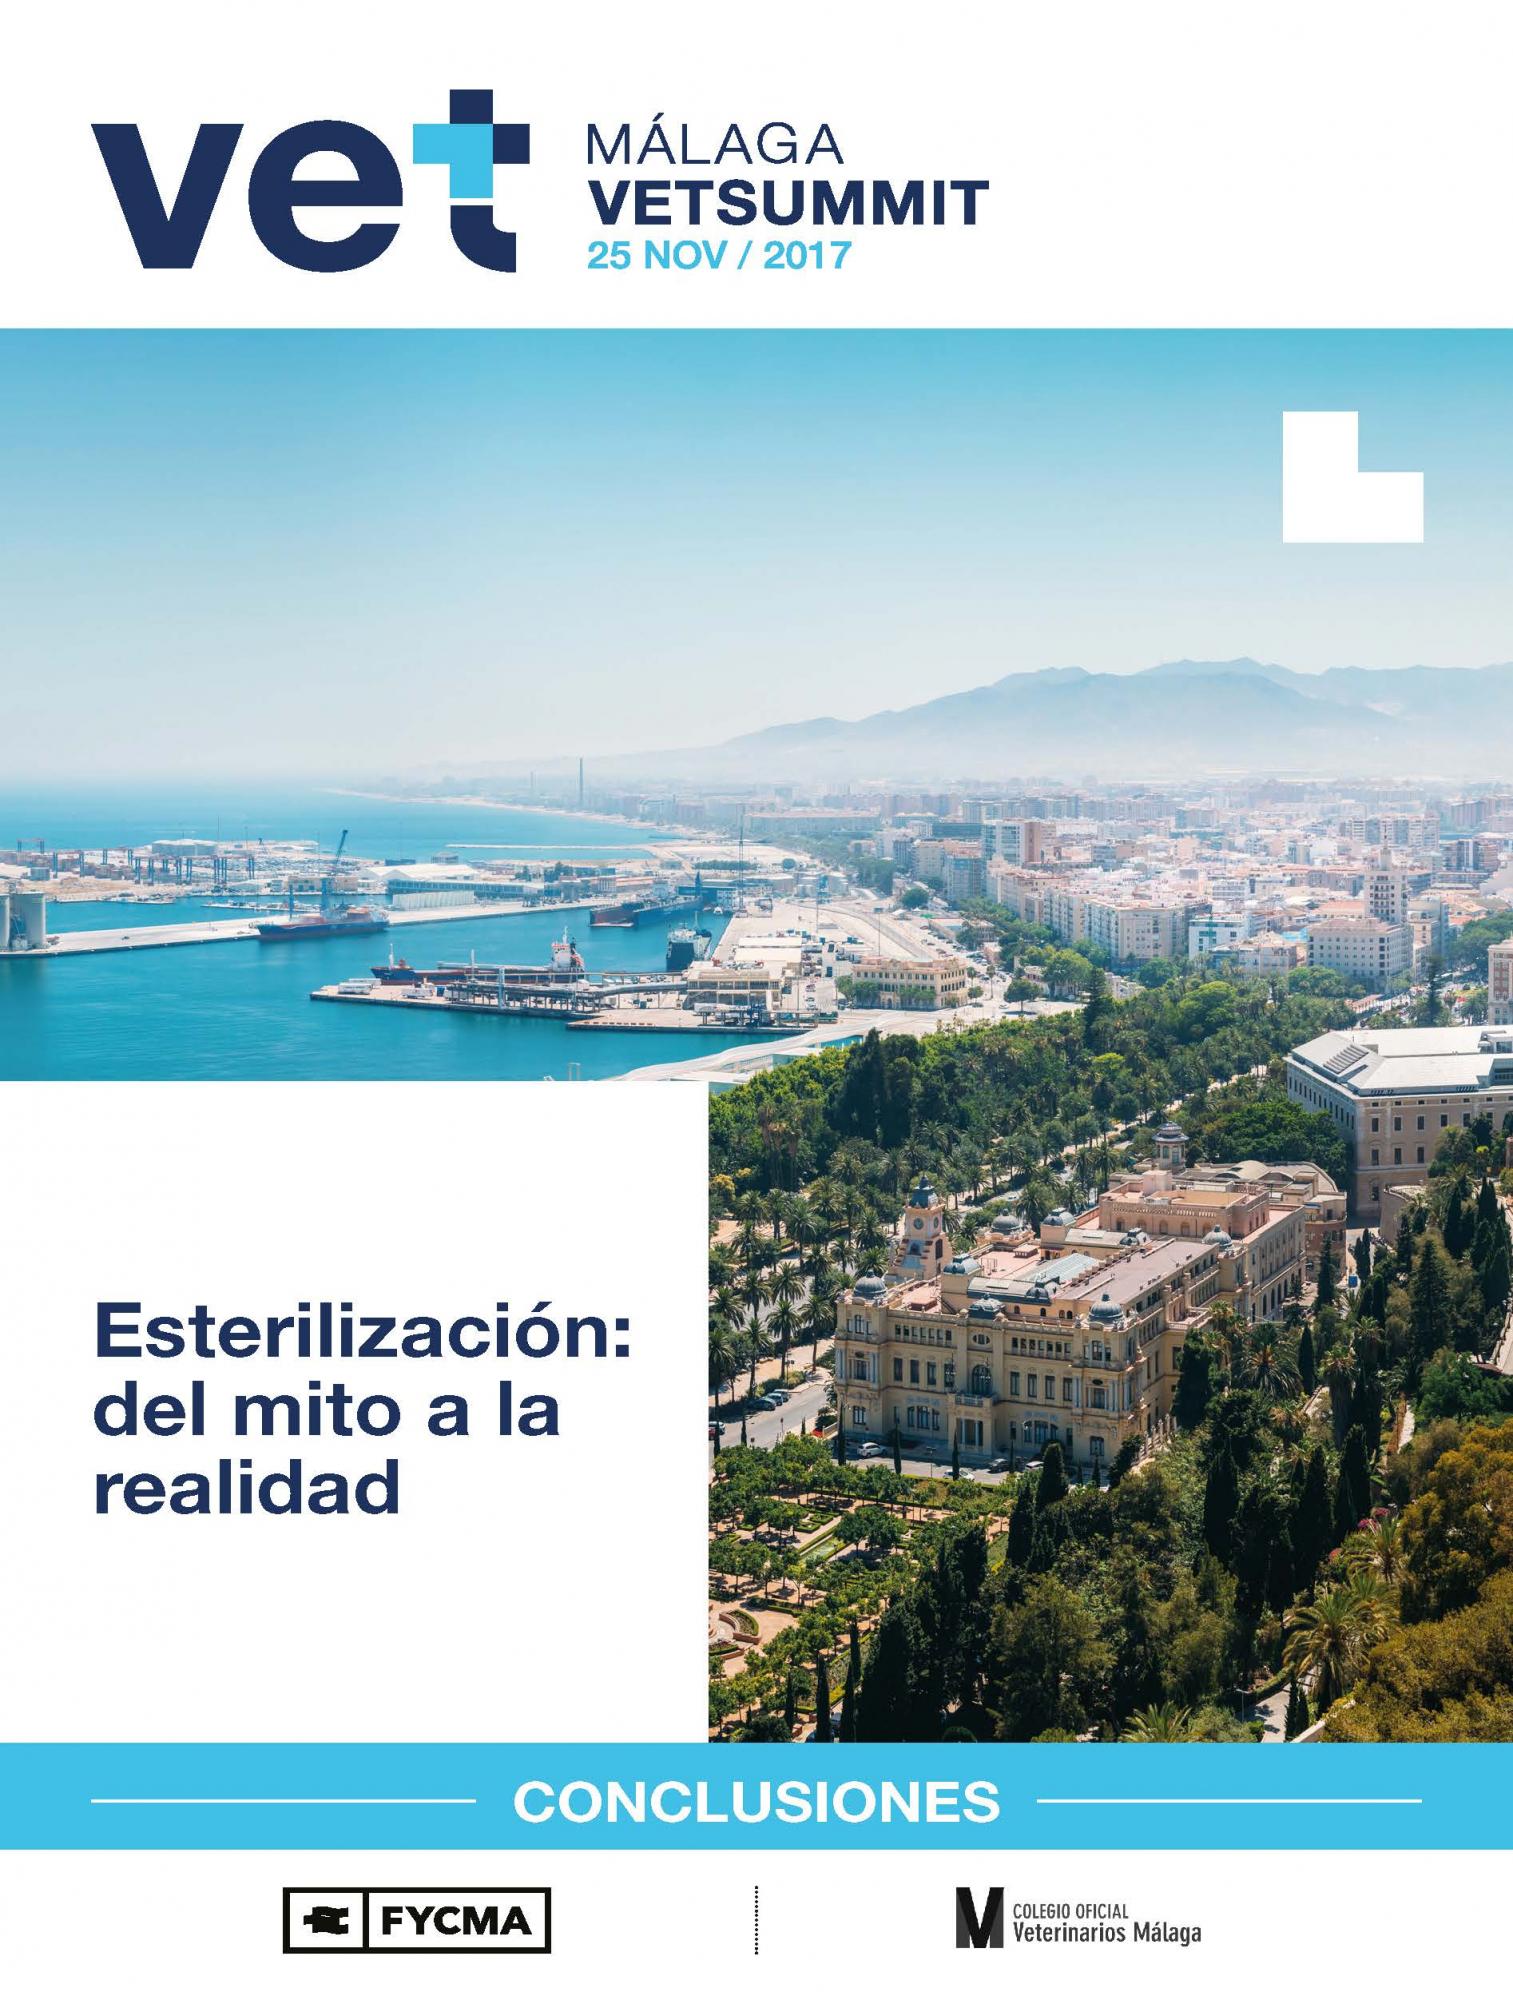 “Esterilización, del mito a la realidad”: ya están disponibles las conclusiones de la VetSummit celebrada en Málaga